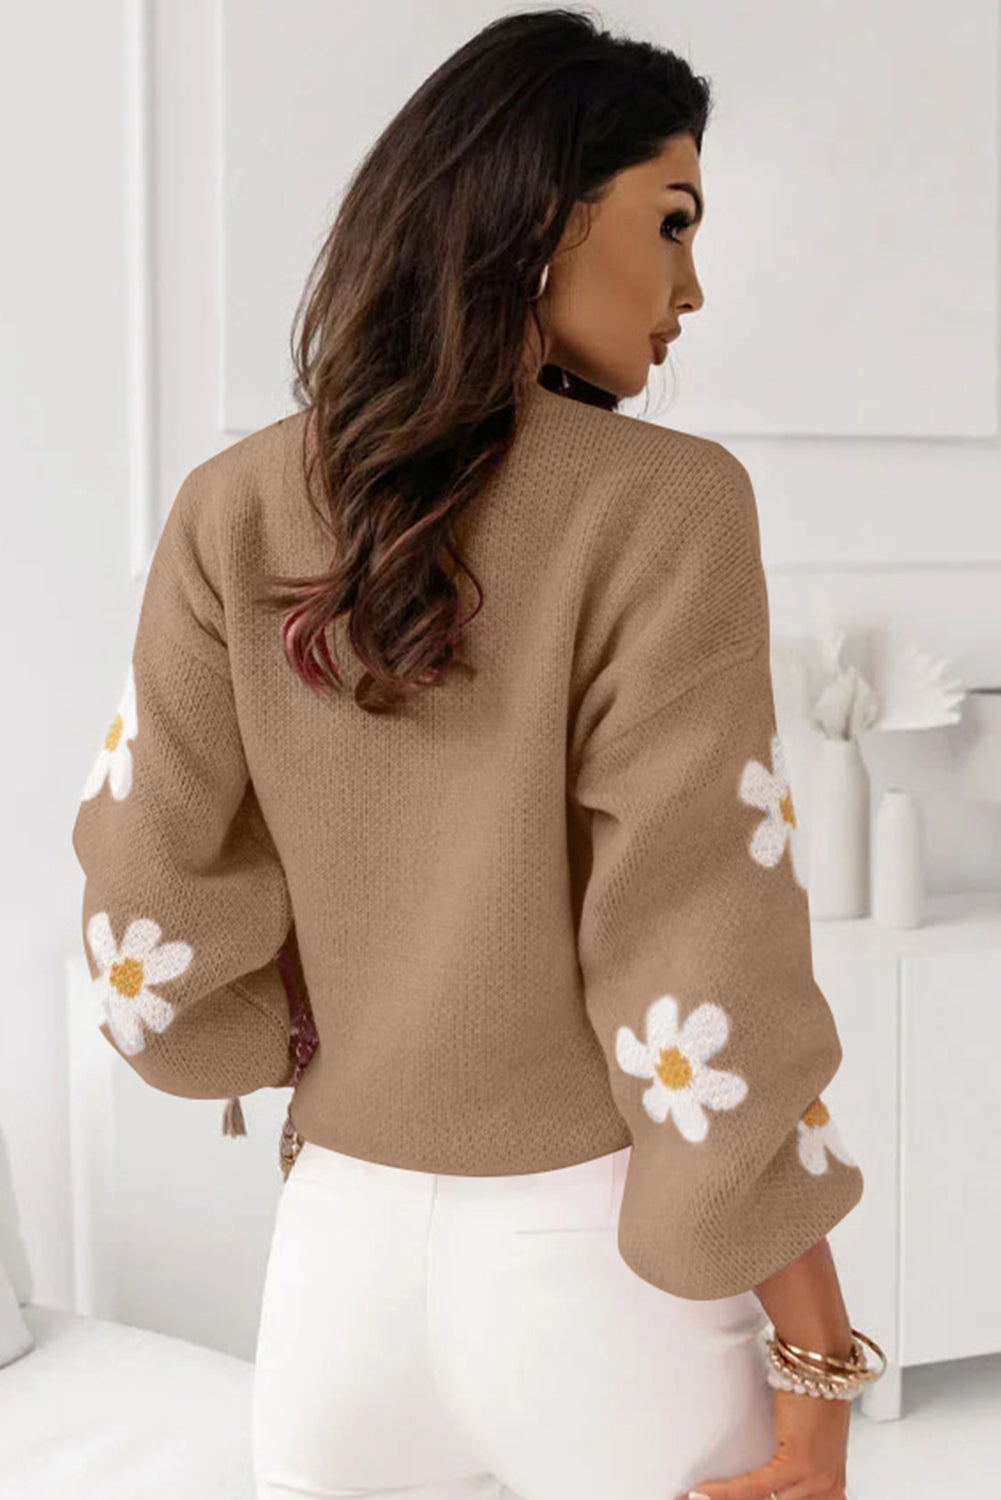 Blasser Khaki-Rosa-Pullover mit Blumenmuster und überschnittener Schulter